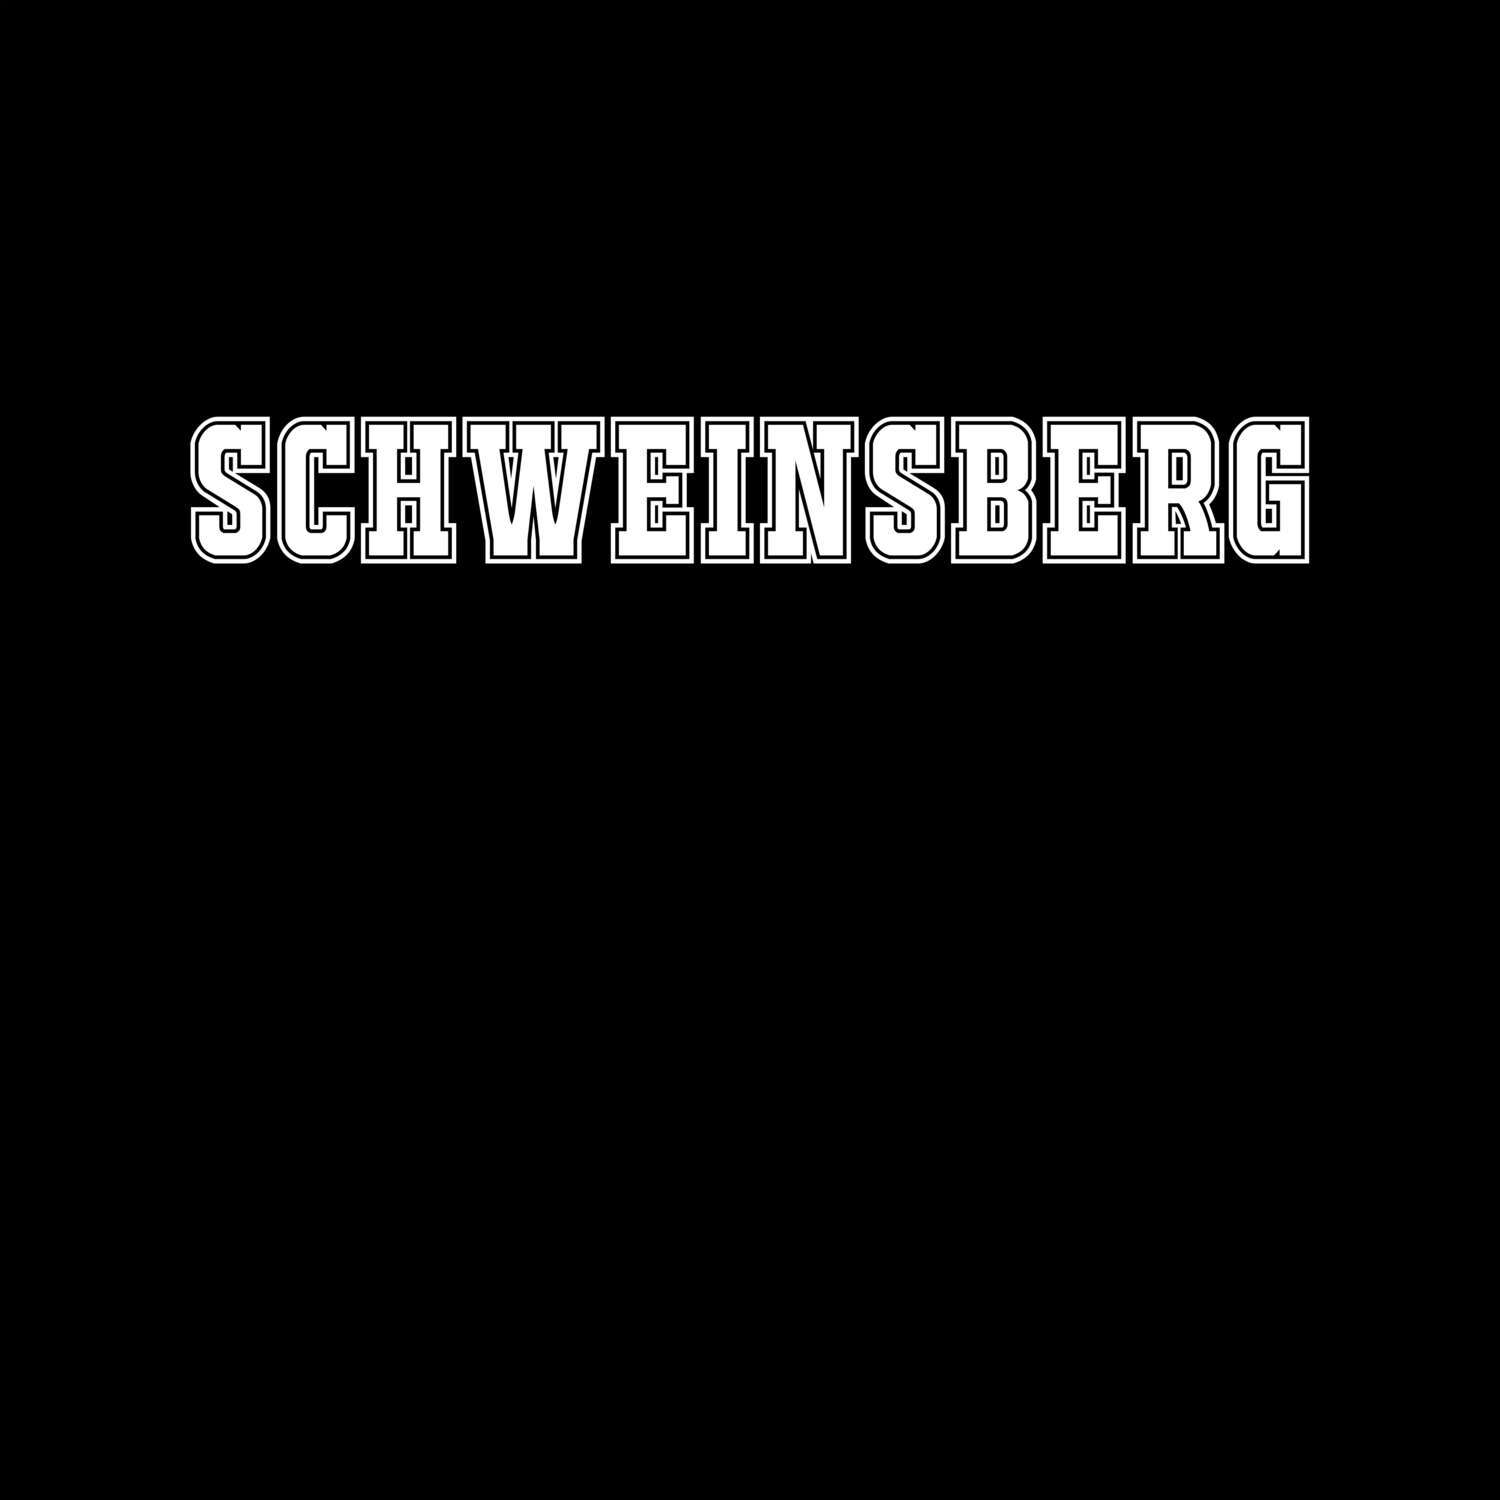 Schweinsberg T-Shirt »Classic«